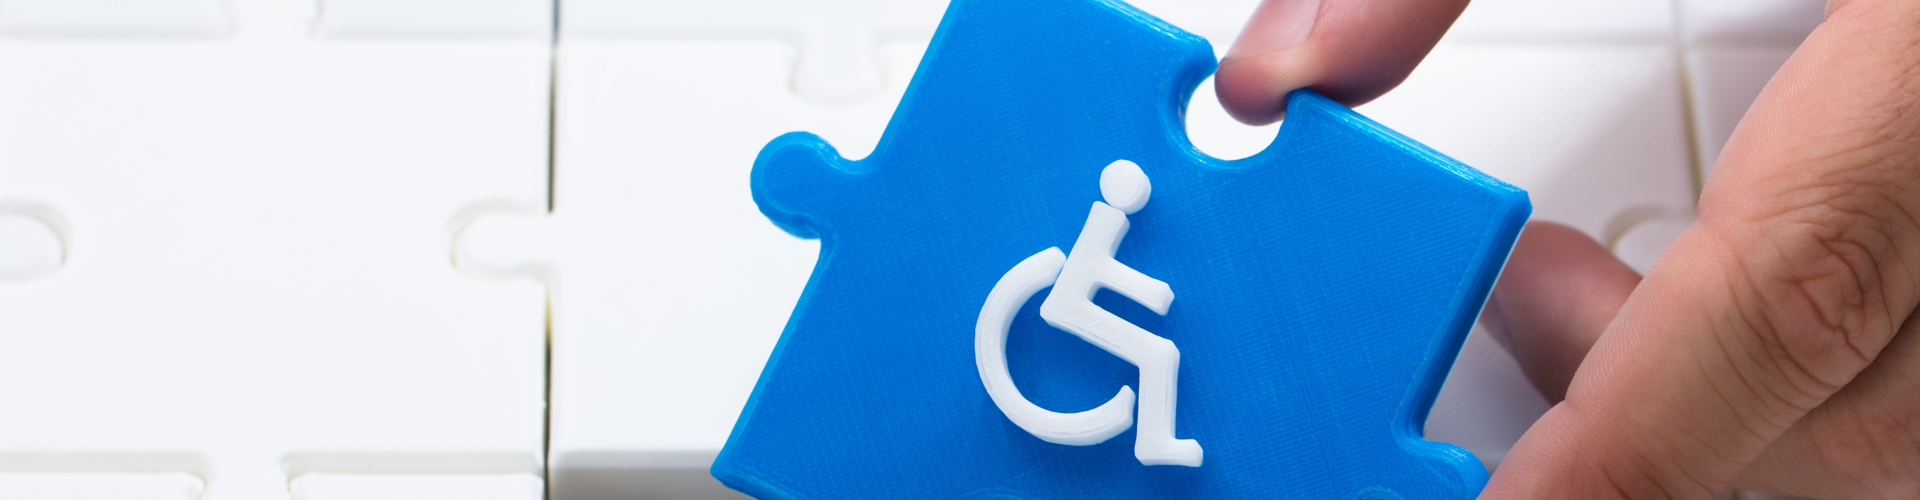 Slider - zdjęcie obrazujące osoby niepełnosprawne